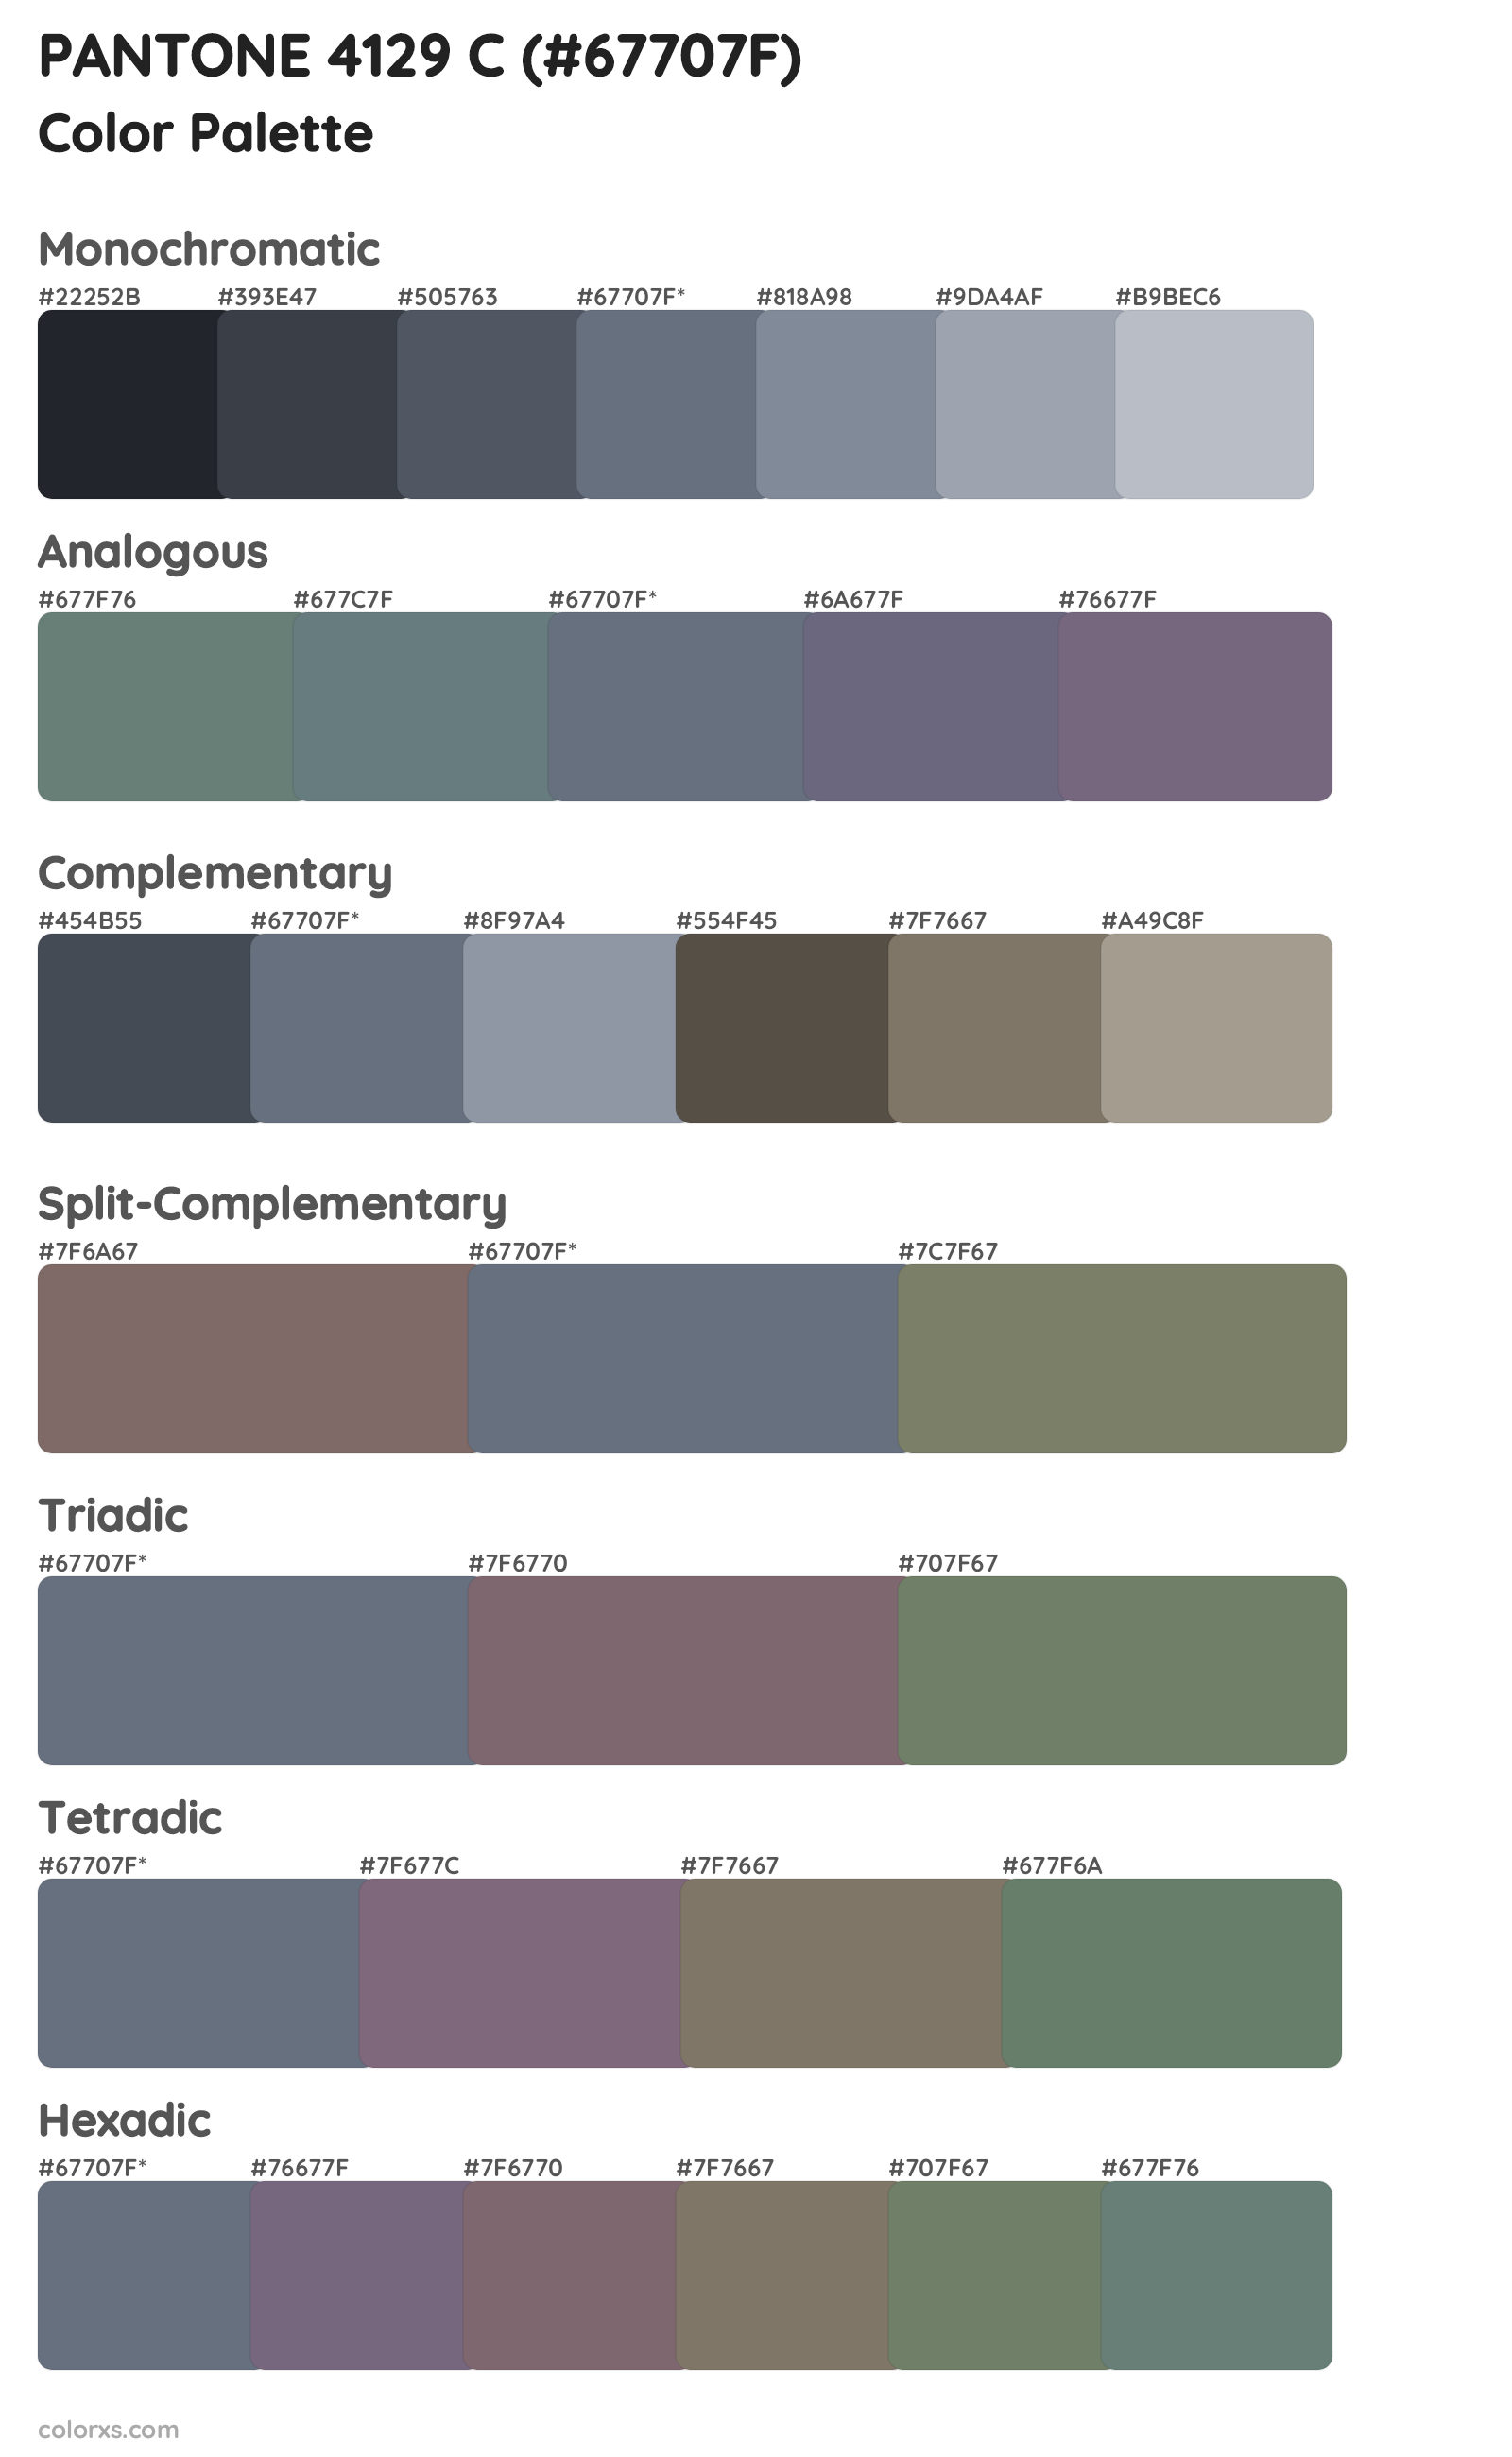 PANTONE 4129 C Color Scheme Palettes